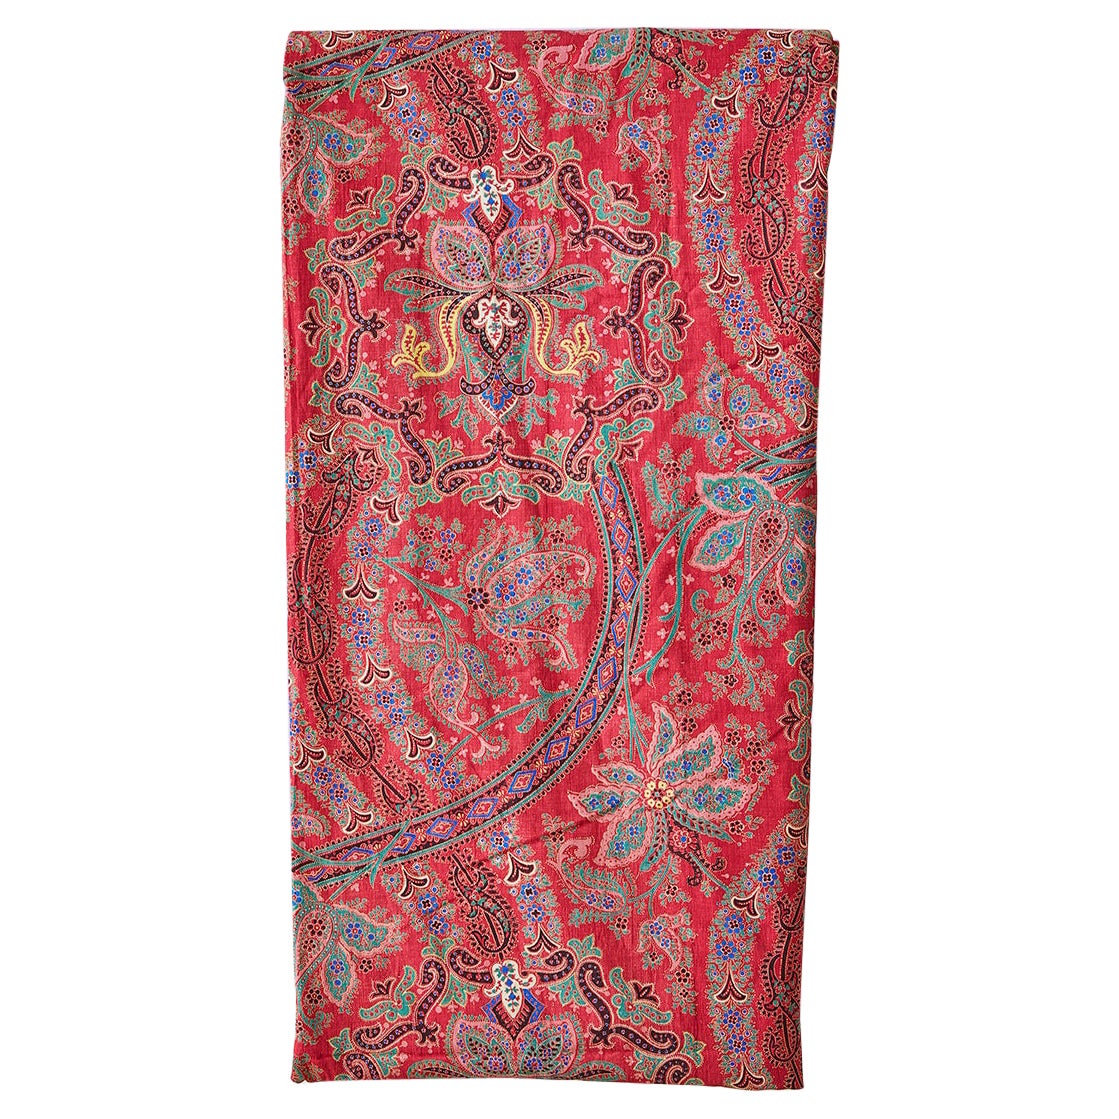 Grand textile de rideau ancien rouge à motif cachemire, France, 19ème siècle